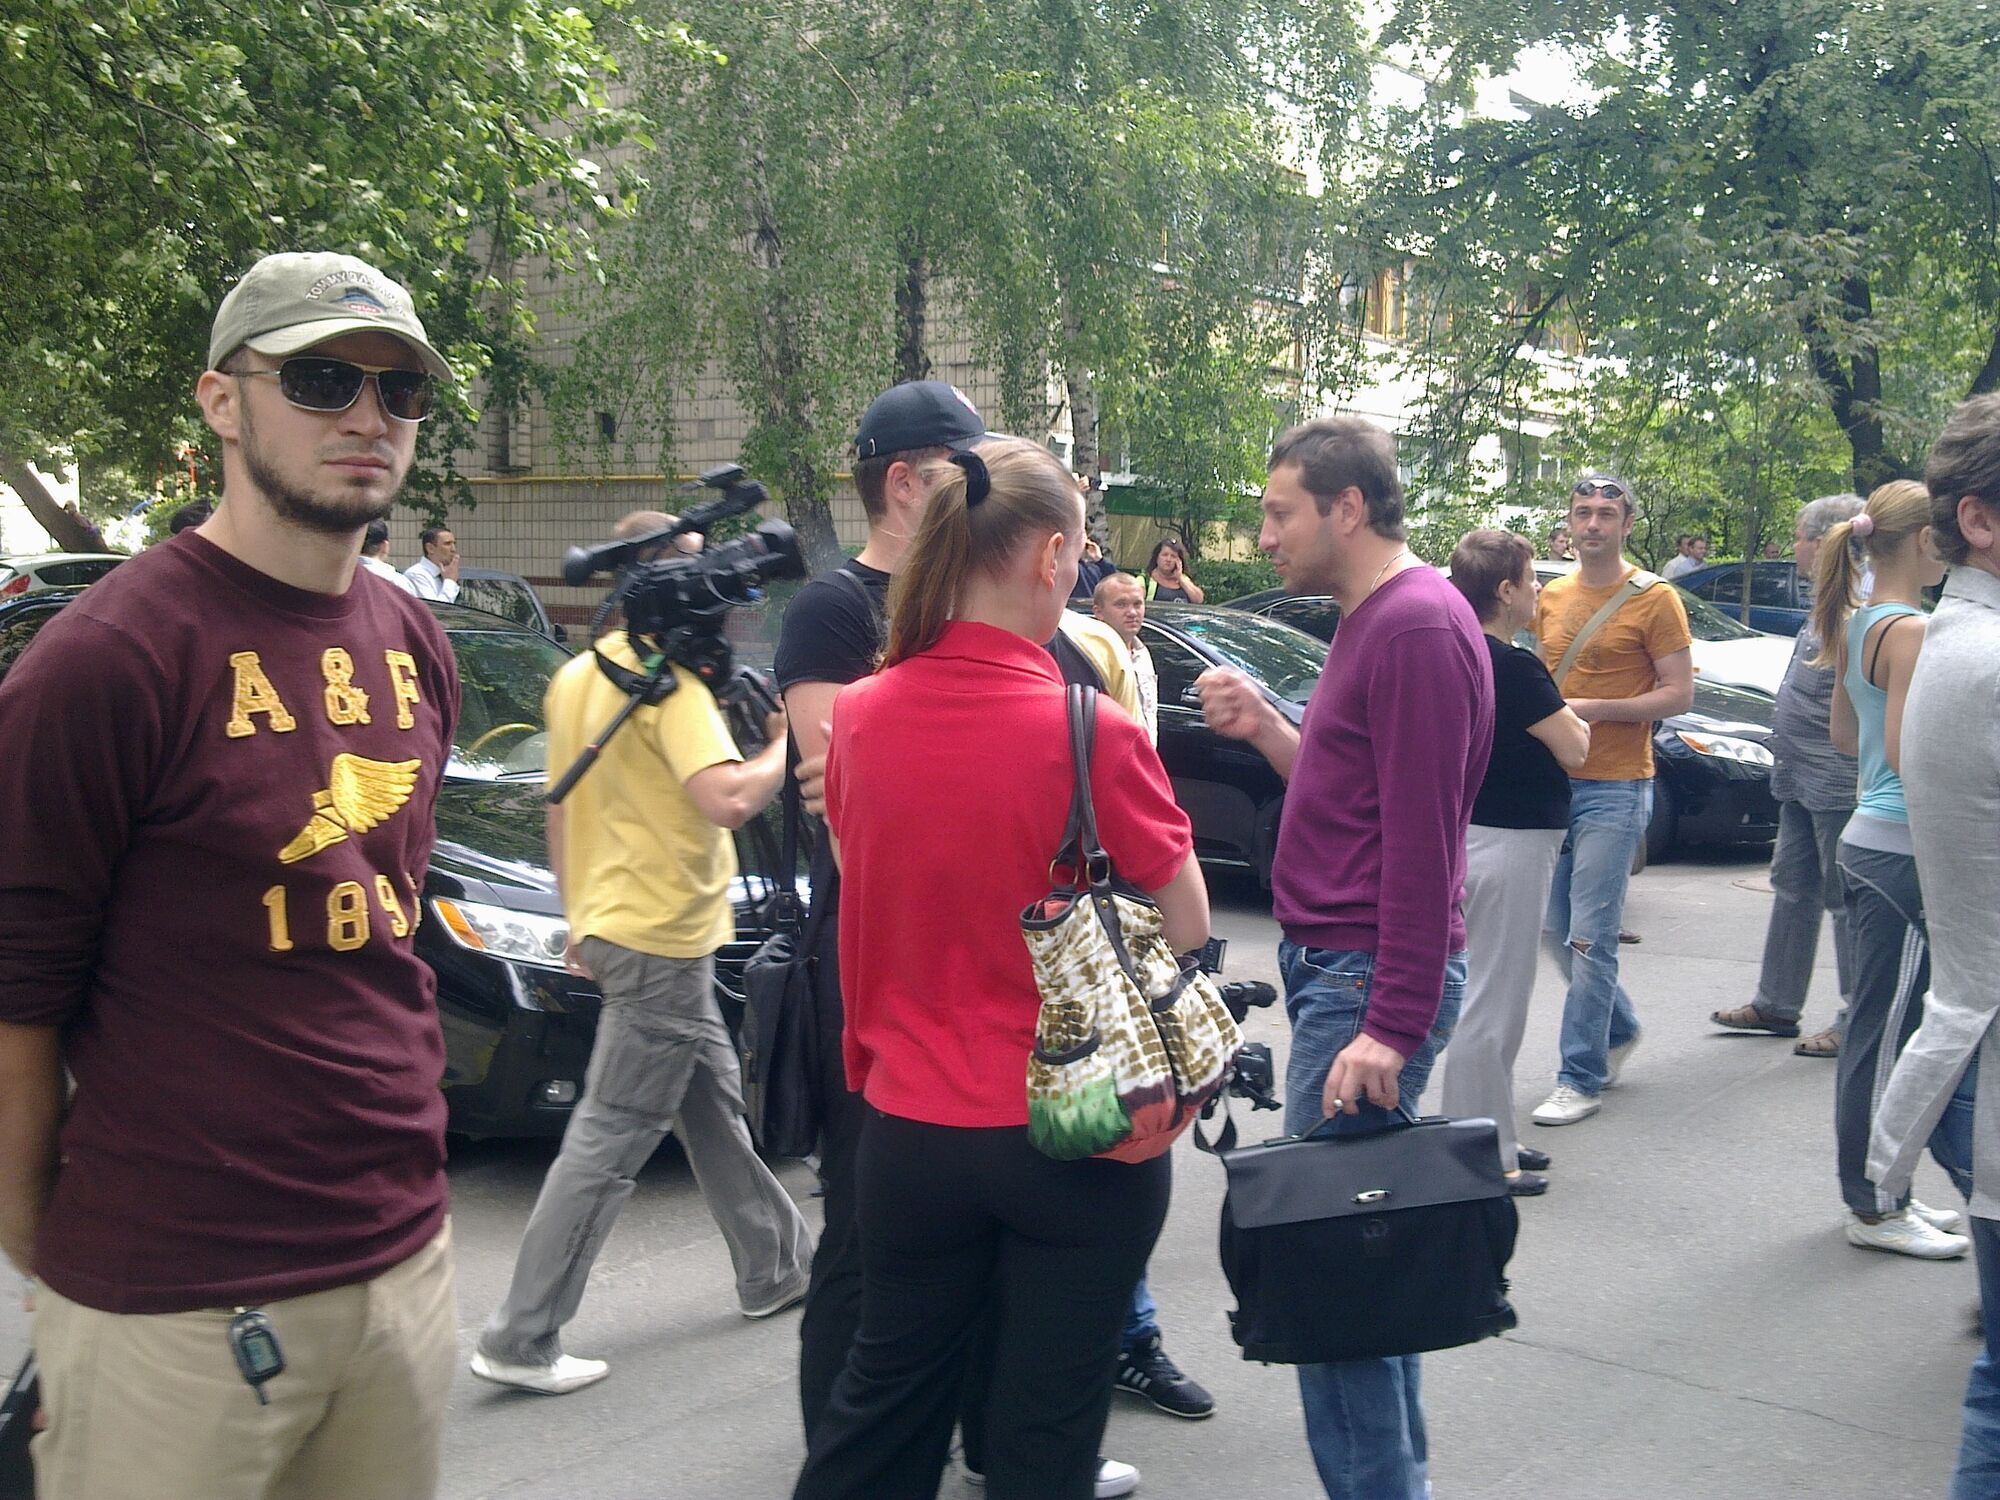 Журналістам заборонили протестувати під вікнами ГПУ